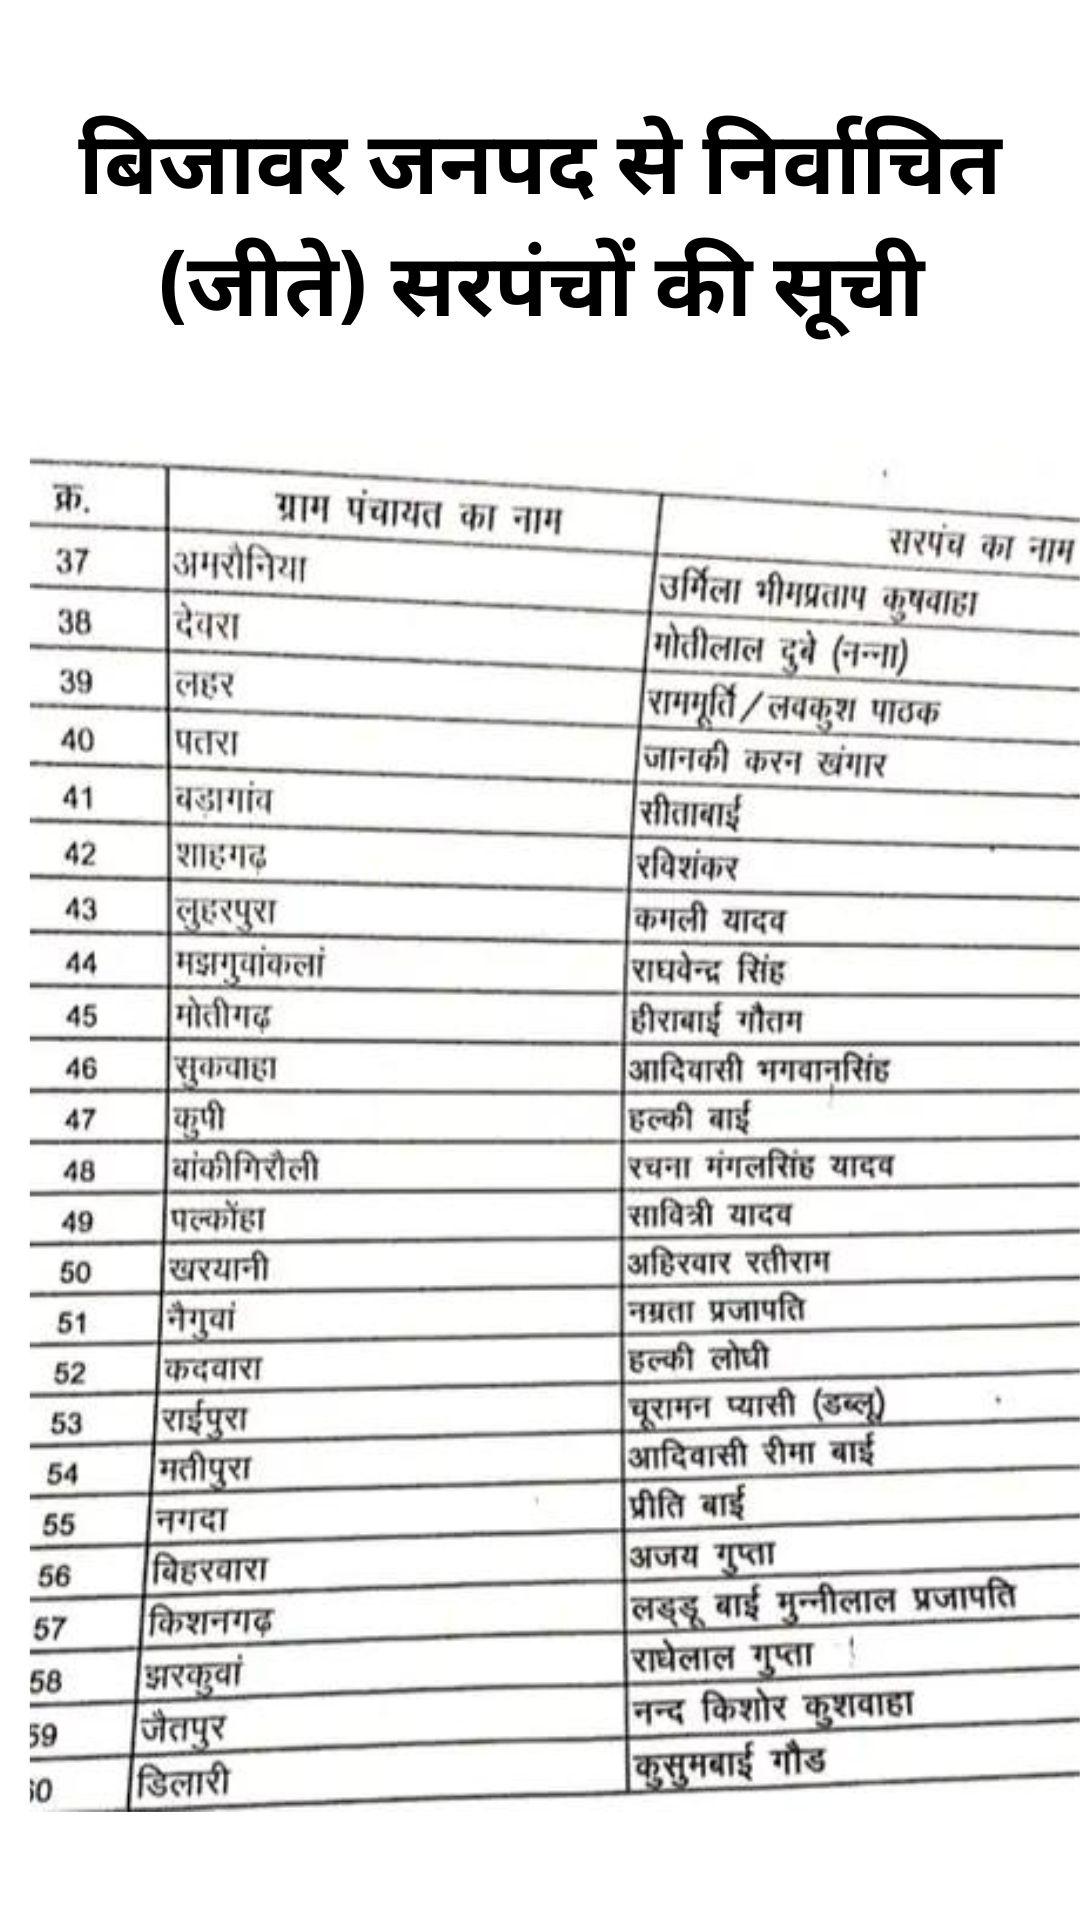 छतरपुर जिले के सरपंचों की सूची